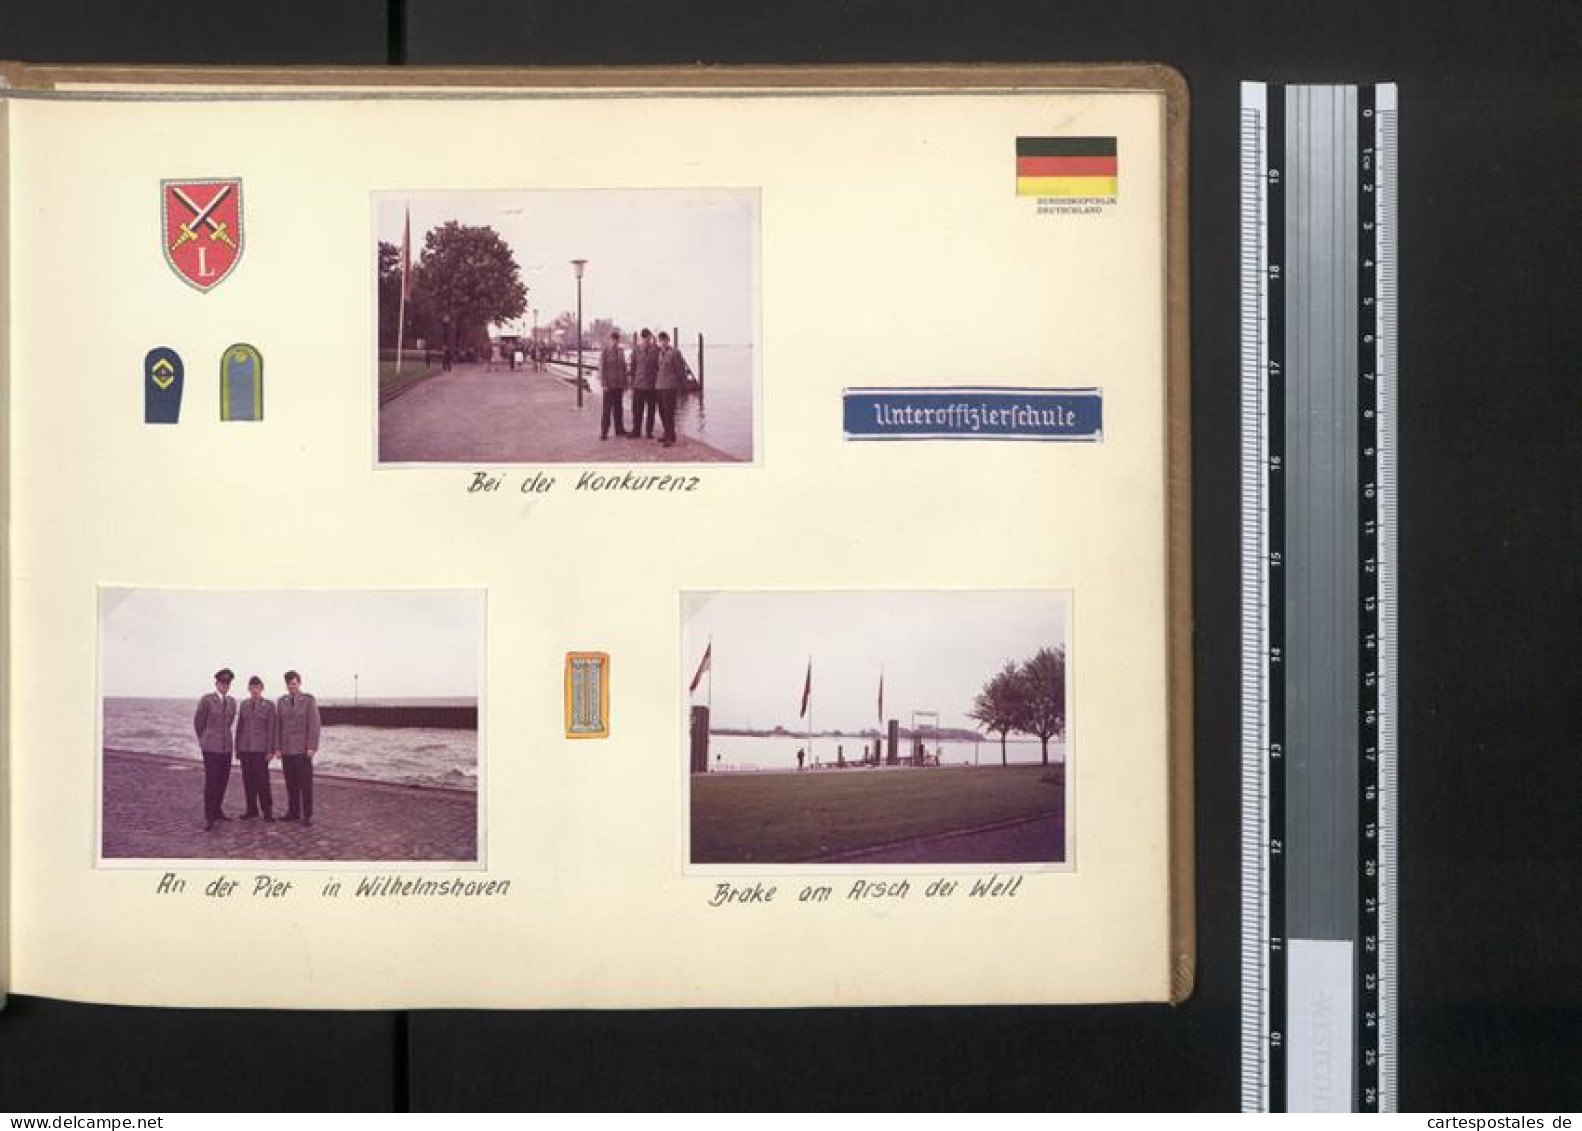 Fotoalbum Mit 67 Fotografien Bundeswehr, Grundausbildung 1969, Panzer, NATO, Jugendlager, Uniform  - Alben & Sammlungen